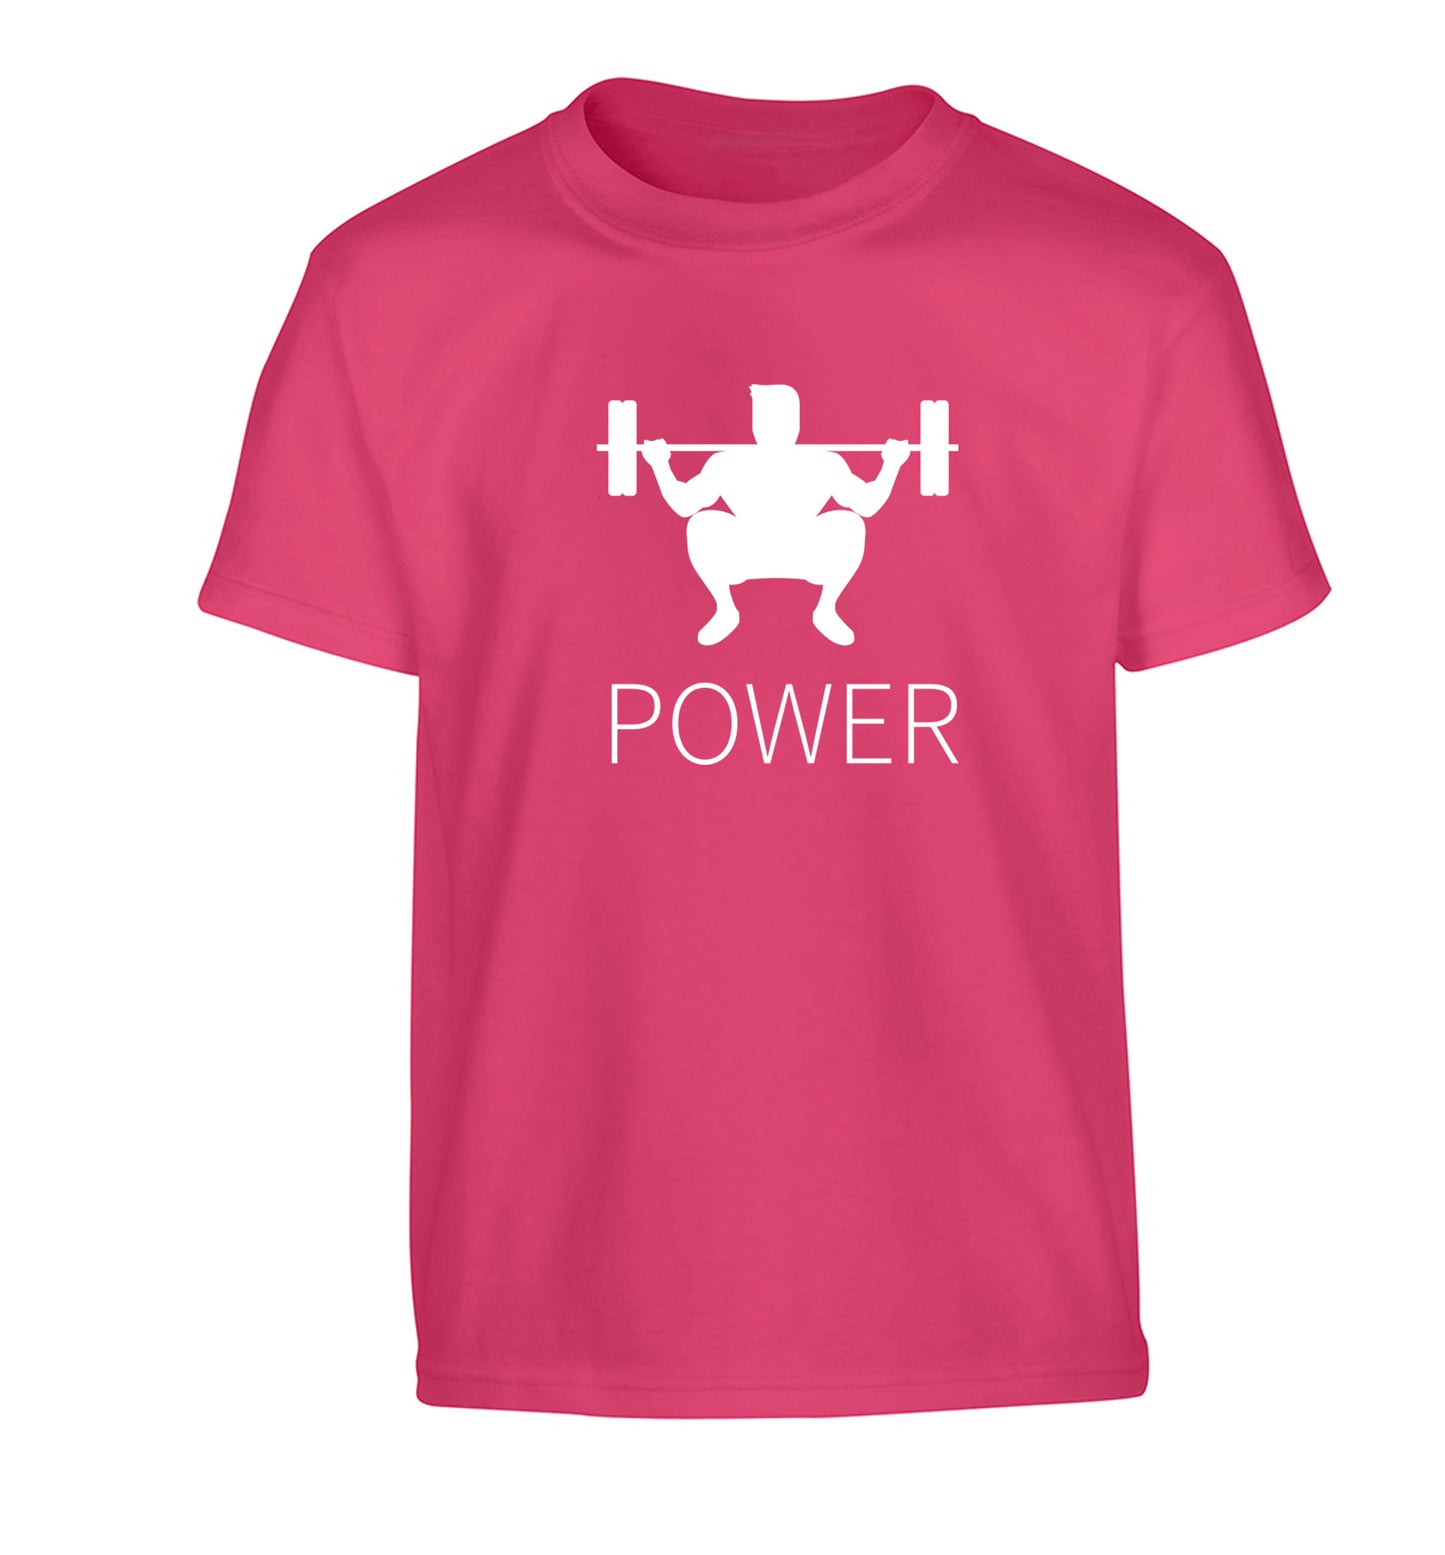 Lift power Children's pink Tshirt 12-13 Years